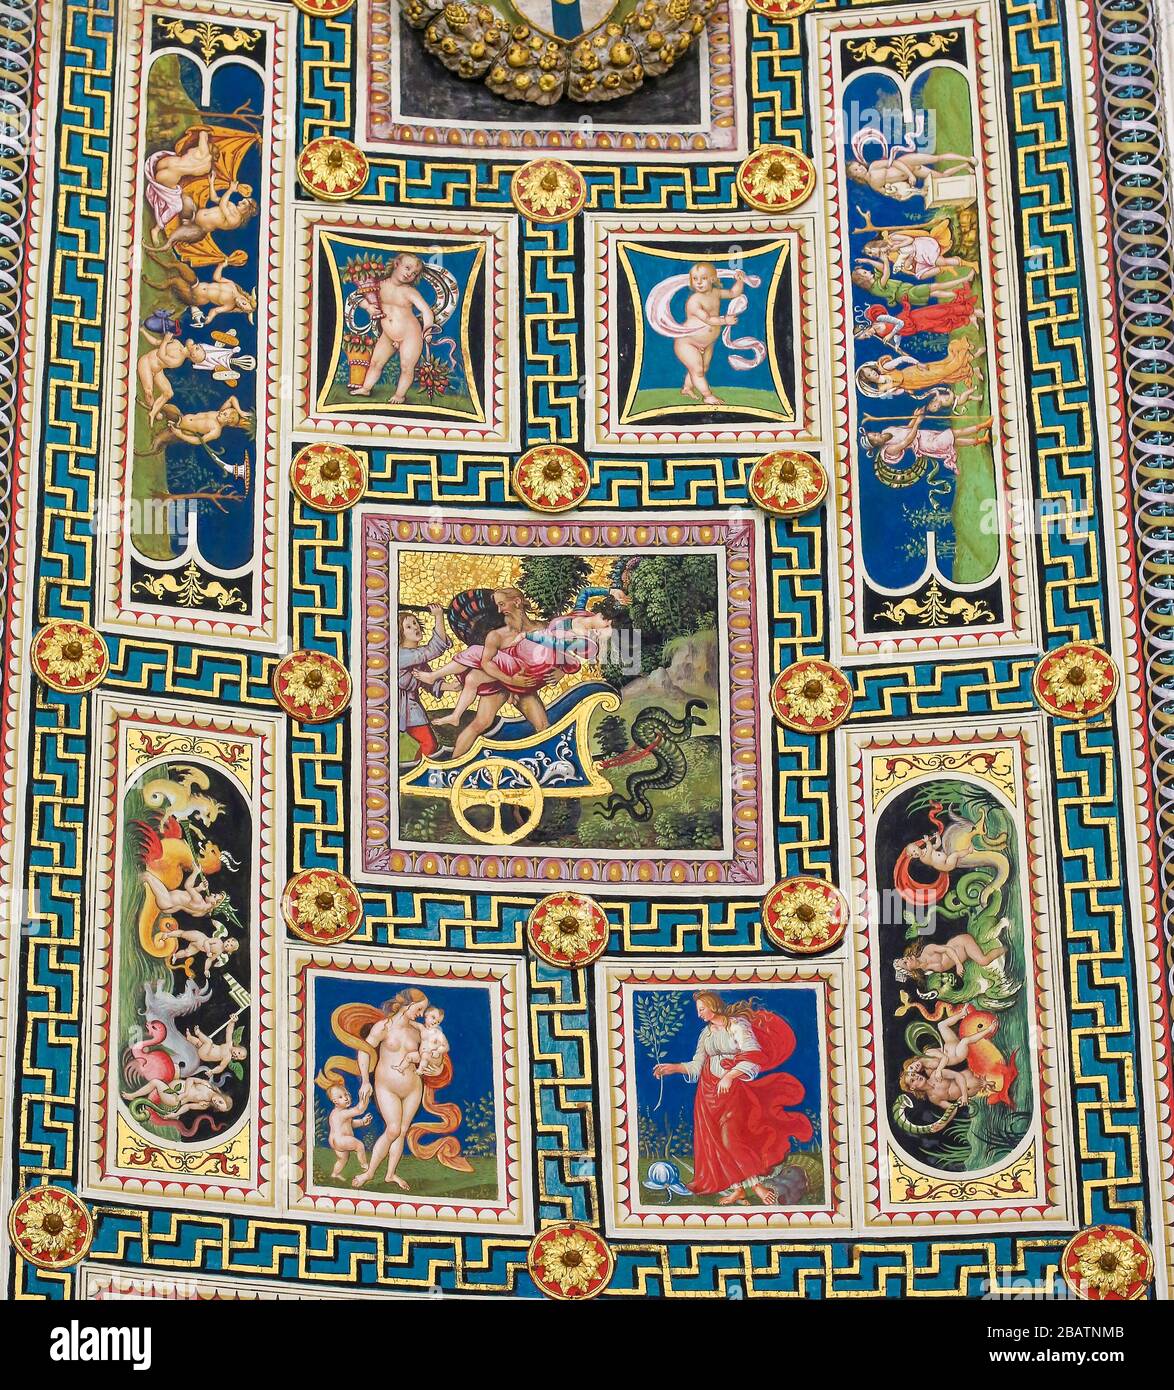 SIENA, ITALIA - 10 DE JULIO de 2017: Frescos (1502) en el techo de la Biblioteca Piccolomini en la Catedral de Siena, Toscana, Italia, por Pinturicchio Foto de stock